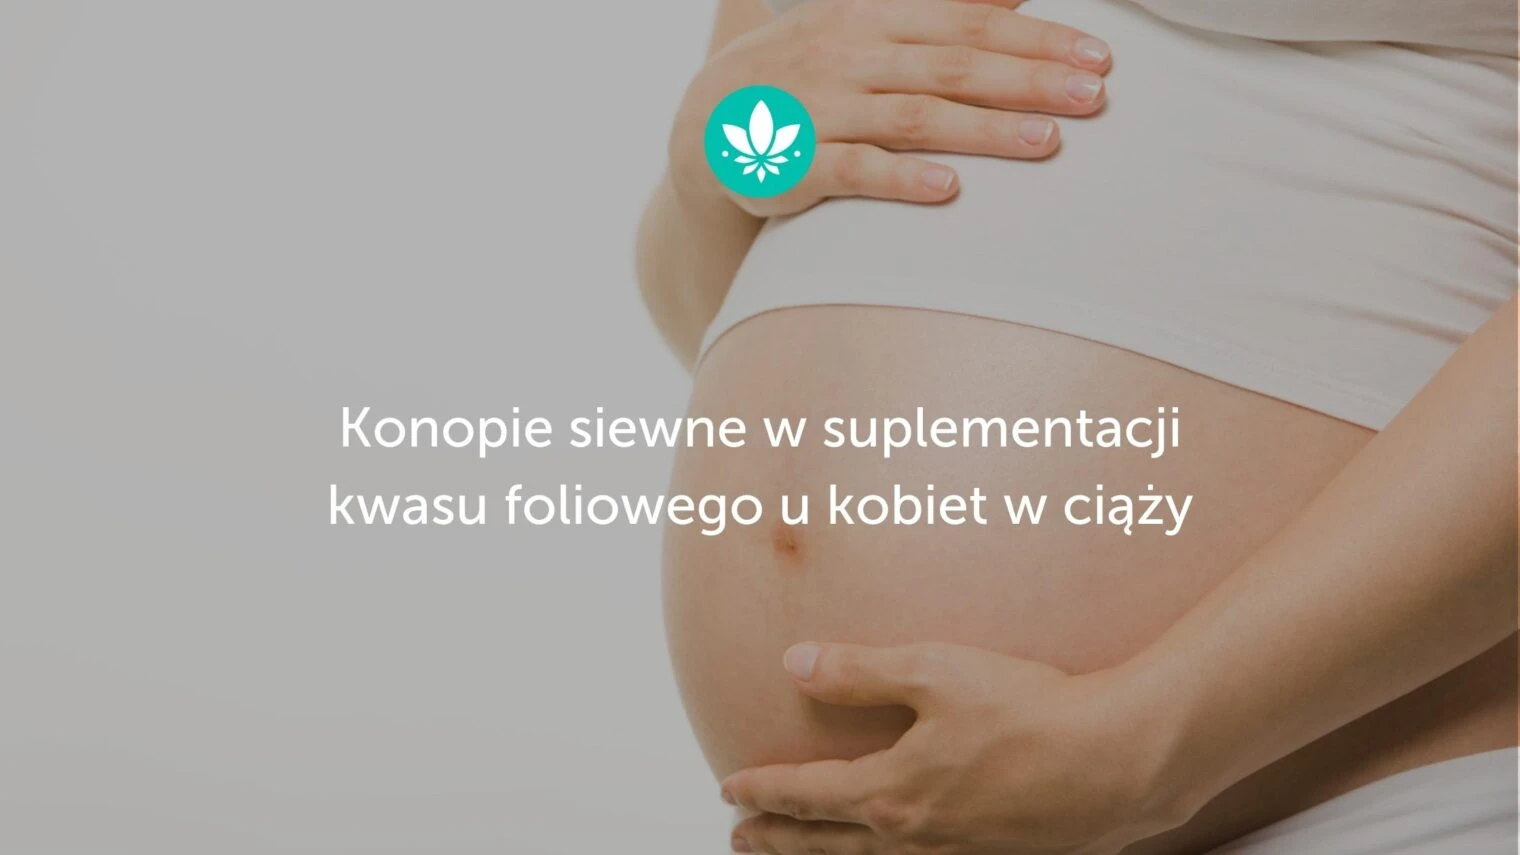 Konopie siewne w suplementacji kwasu foliowego u kobiet w ciąży